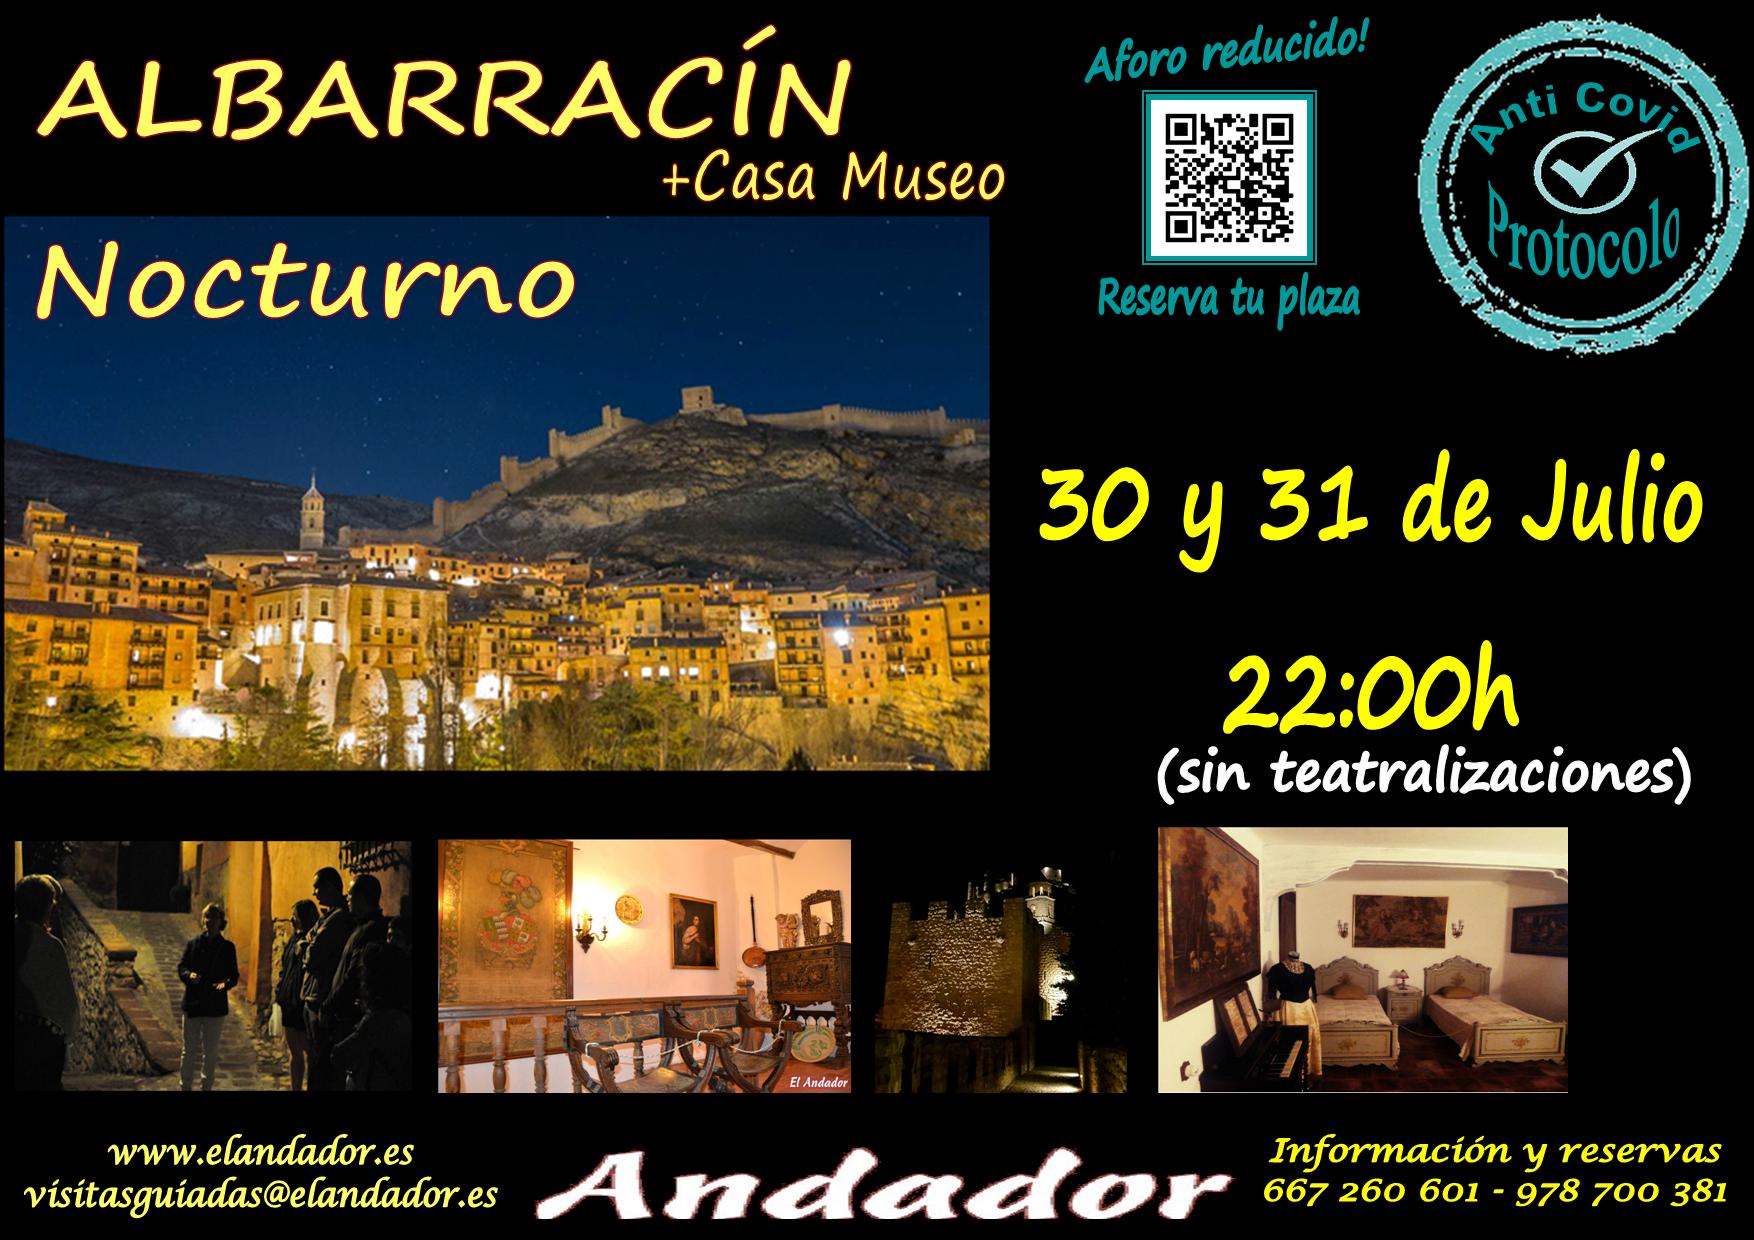 Viernes 30 y Sábado 31 de Julio… Visita guiada en Albarracín Nocturno!